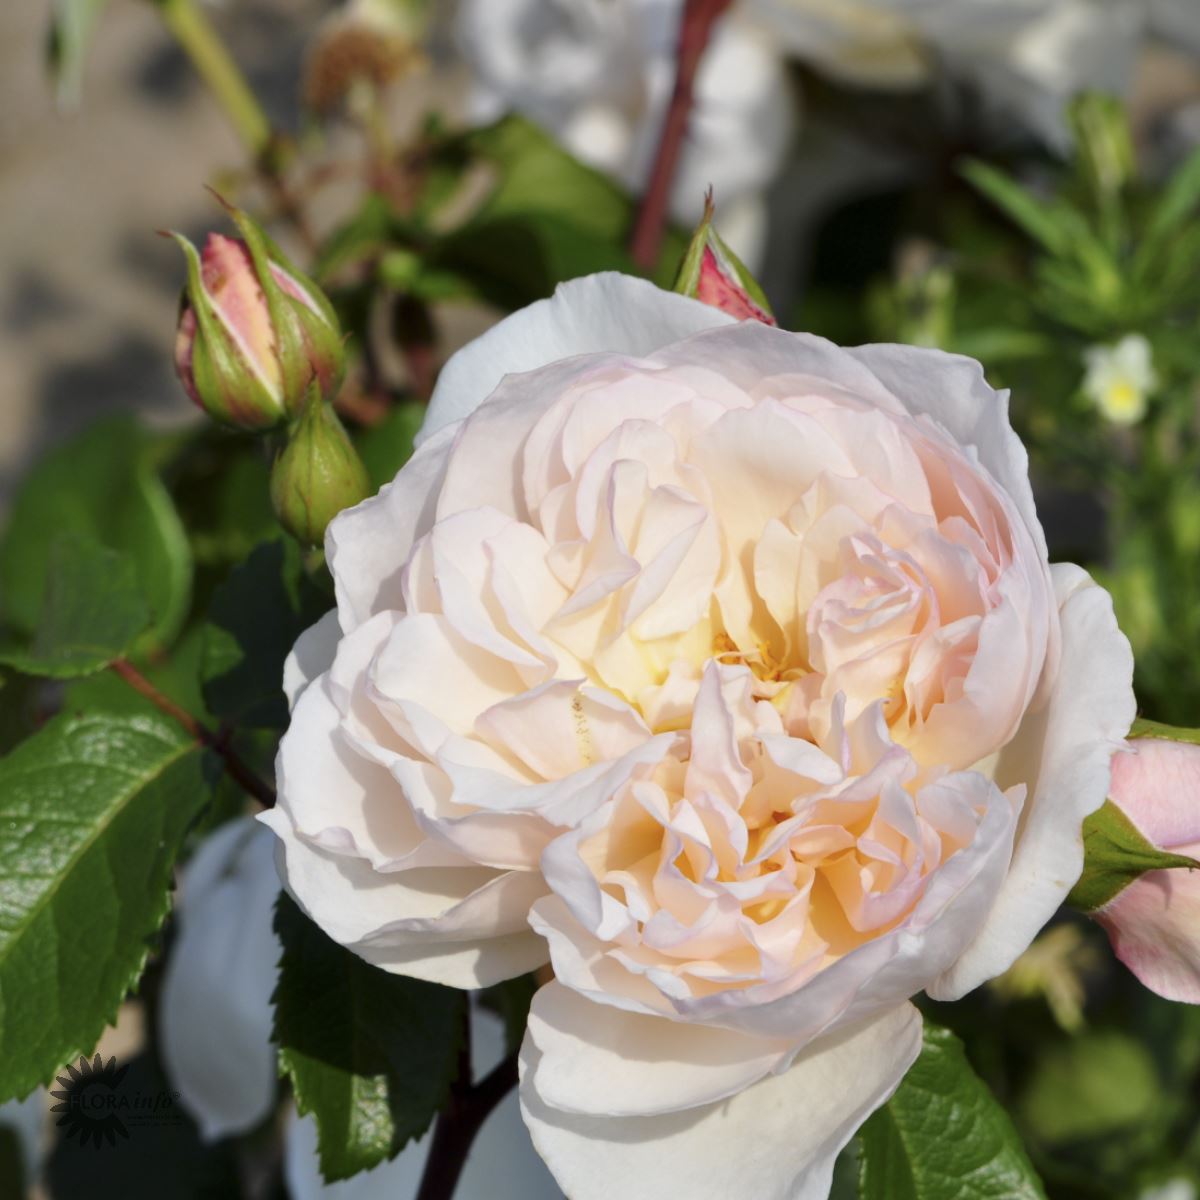 The Generous Gardener Rosen er en Engelsk Rose. Blomsterne er Hvide og bladene er grønne.Slyngrose The Generous Gardener med smukke sart lyserøde blomster i massevis og flot grønt løv og grønne blade